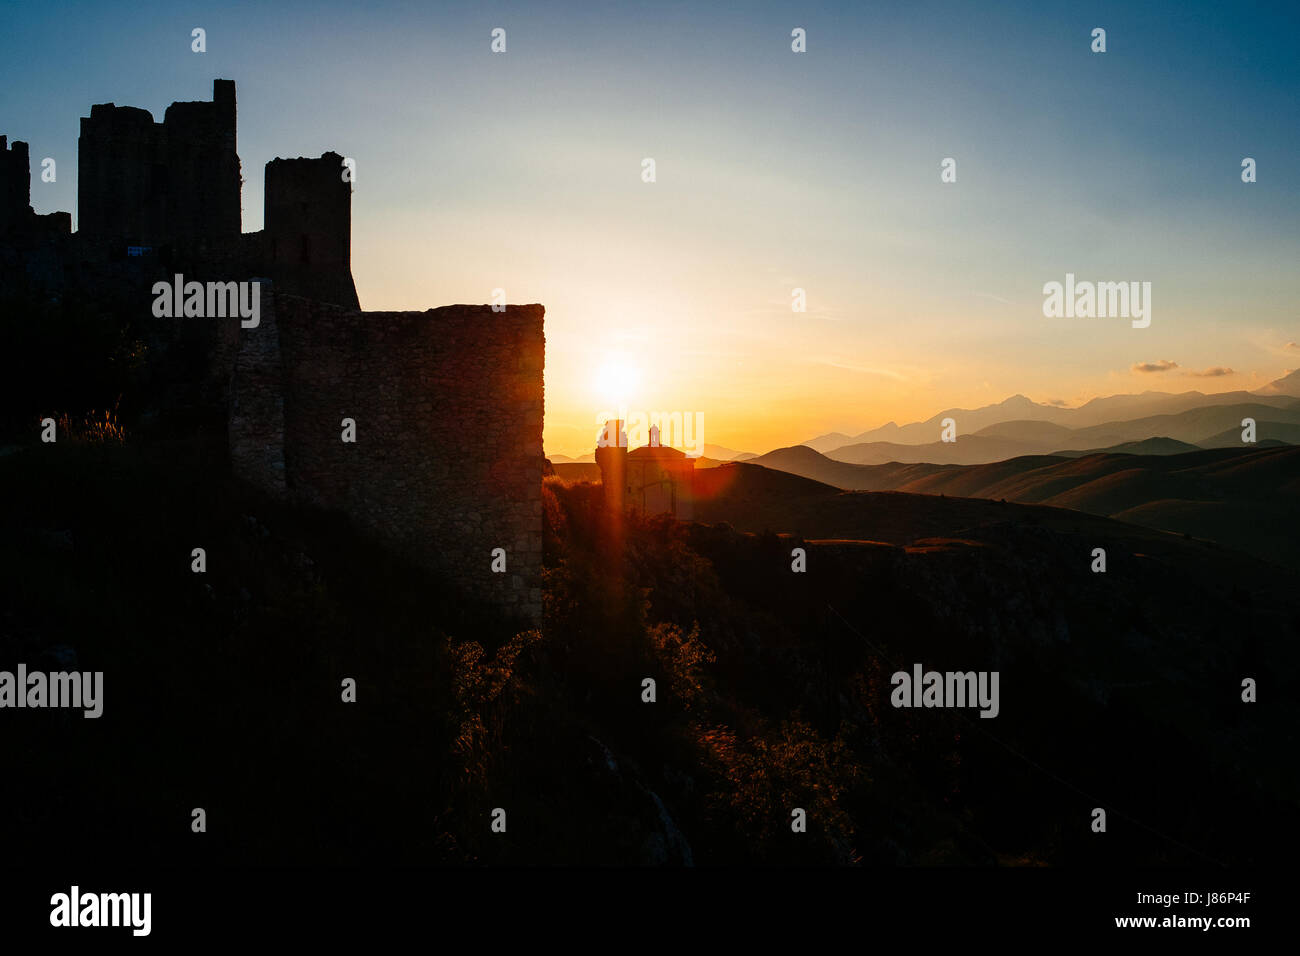 The castle of Rocca Calascio, Abruzzo, Italy at sunset Stock Photo